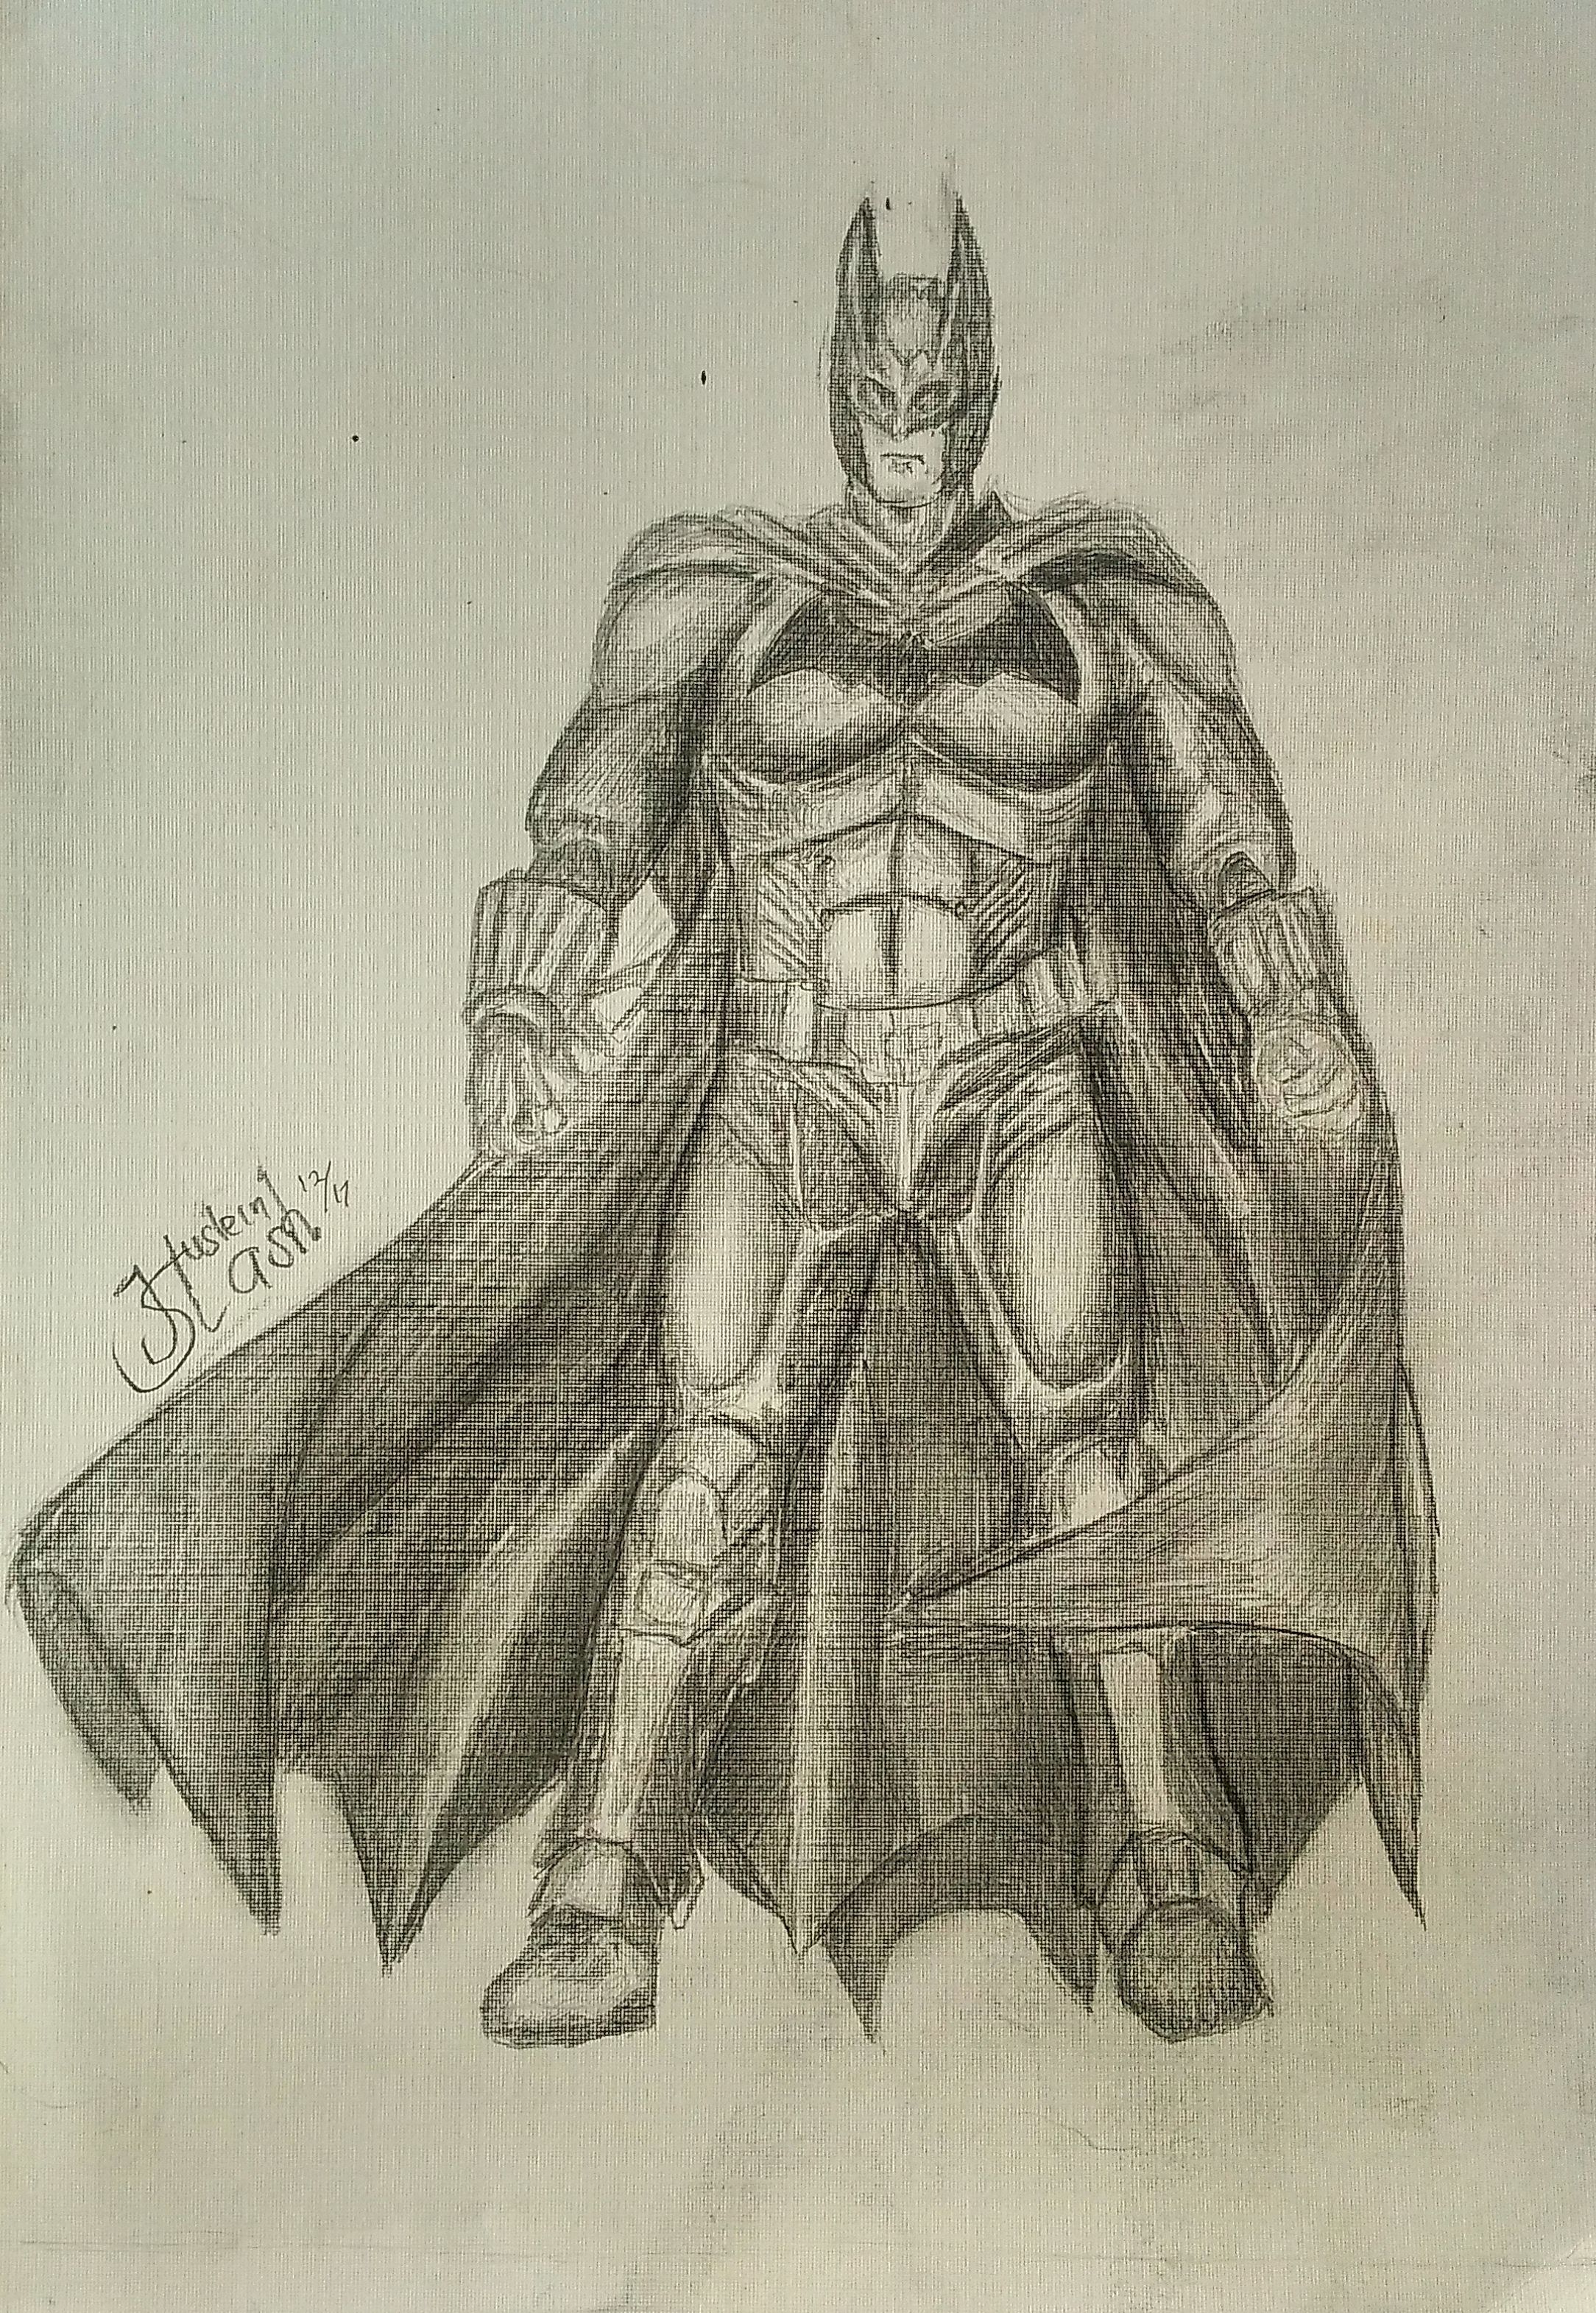 40 Magical Superhero Pencil Drawings - Bored Art